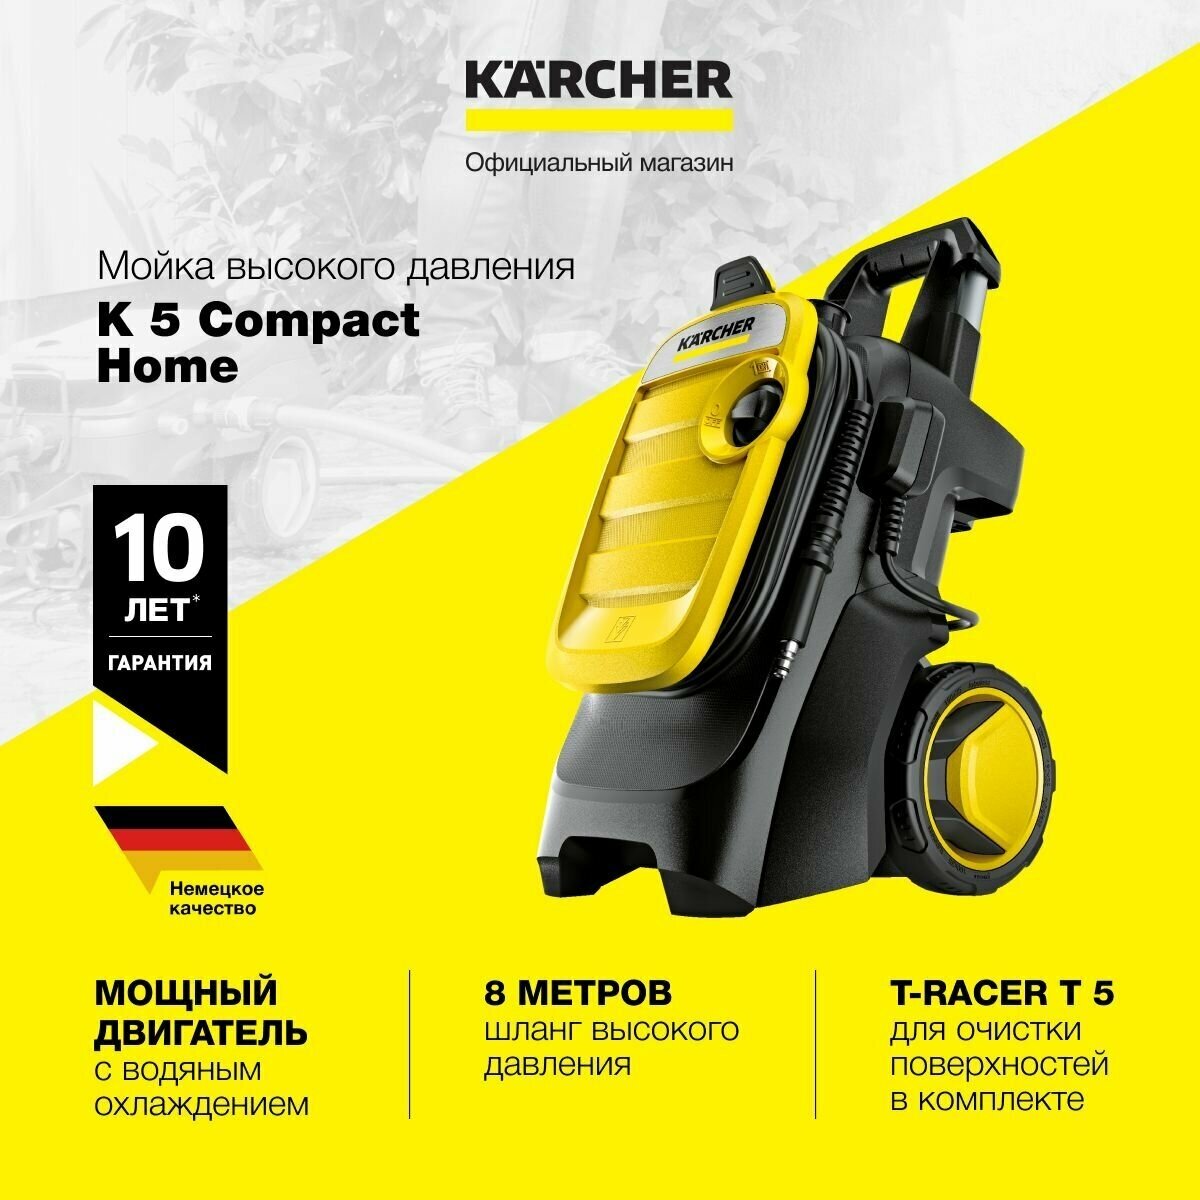 Мини мойка высокого давления Karcher K 5 Compact Home 1.630-753.0 с насадкой T-Racer T 5 2.644-084.0, шлангом длиной 8 метров, грязевой и струйной фрезой